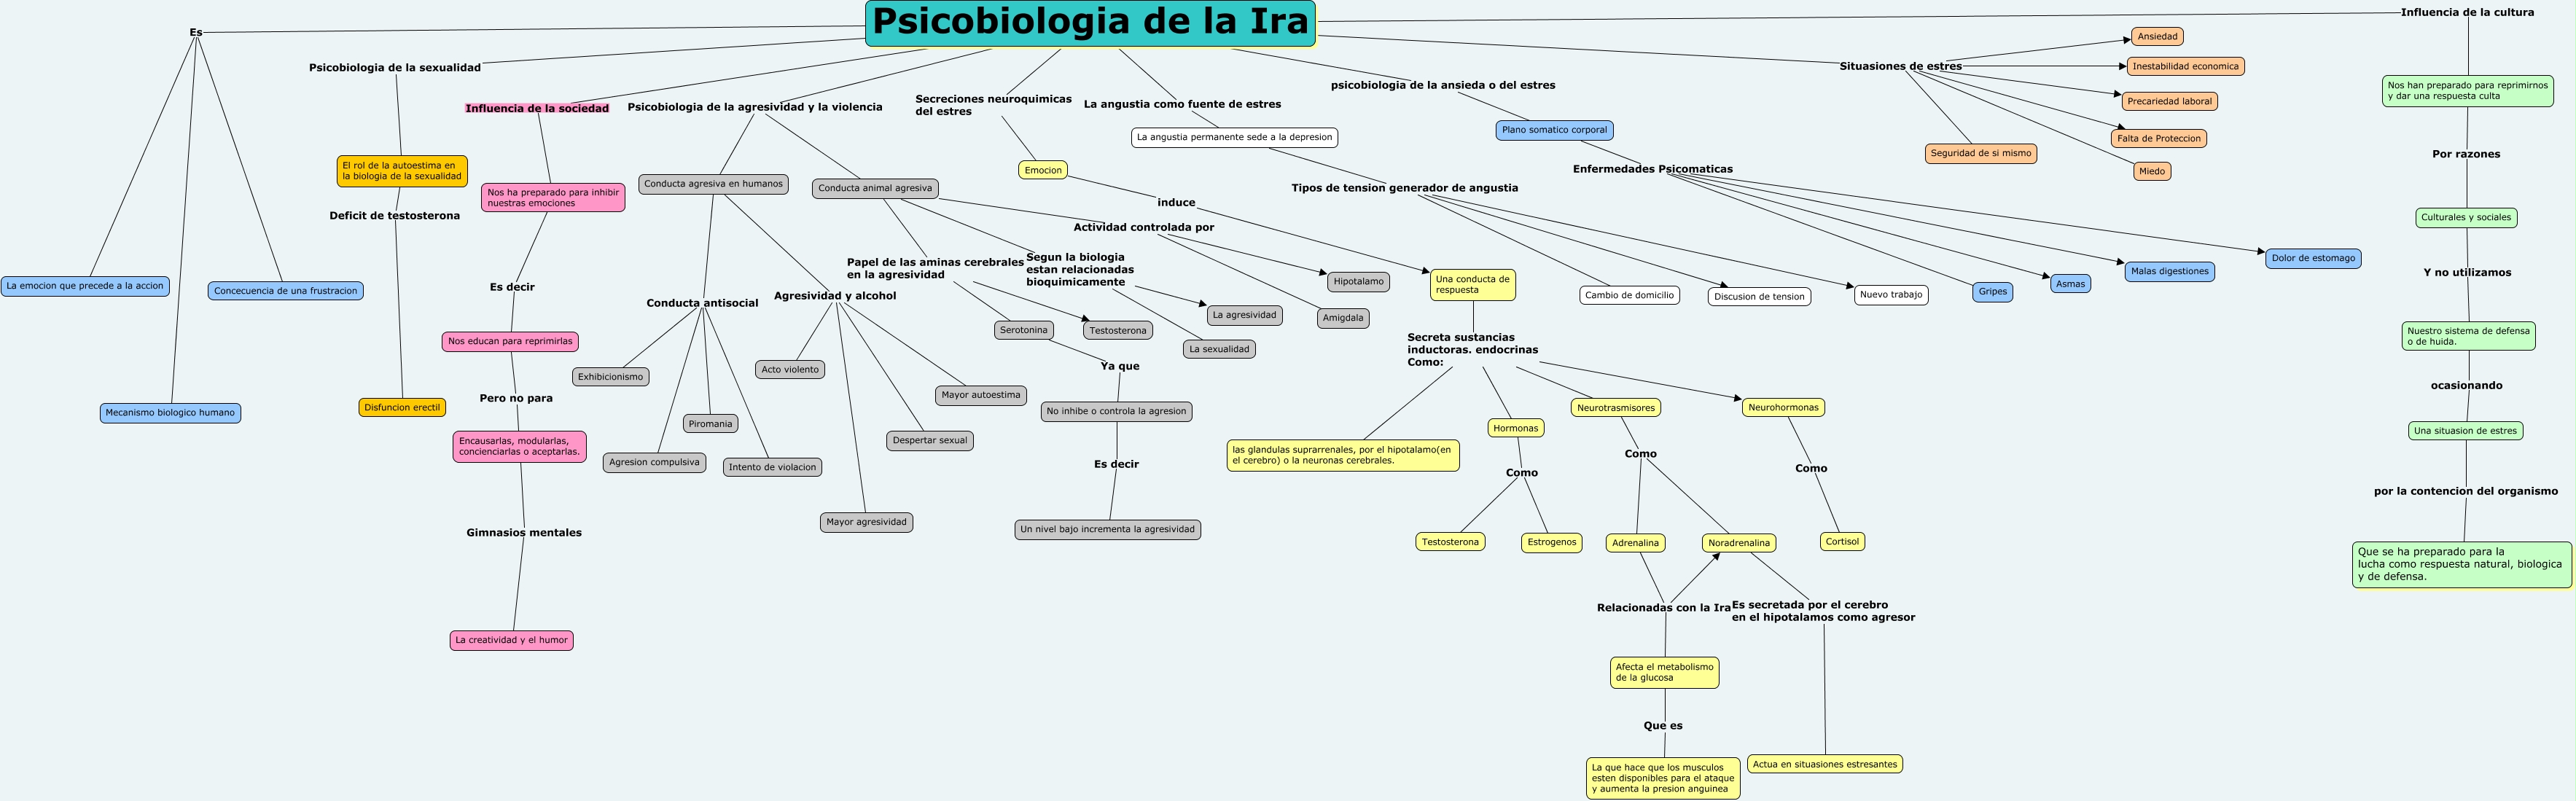 Psicobiologia de la Ira y la violencia - mapa conceptual